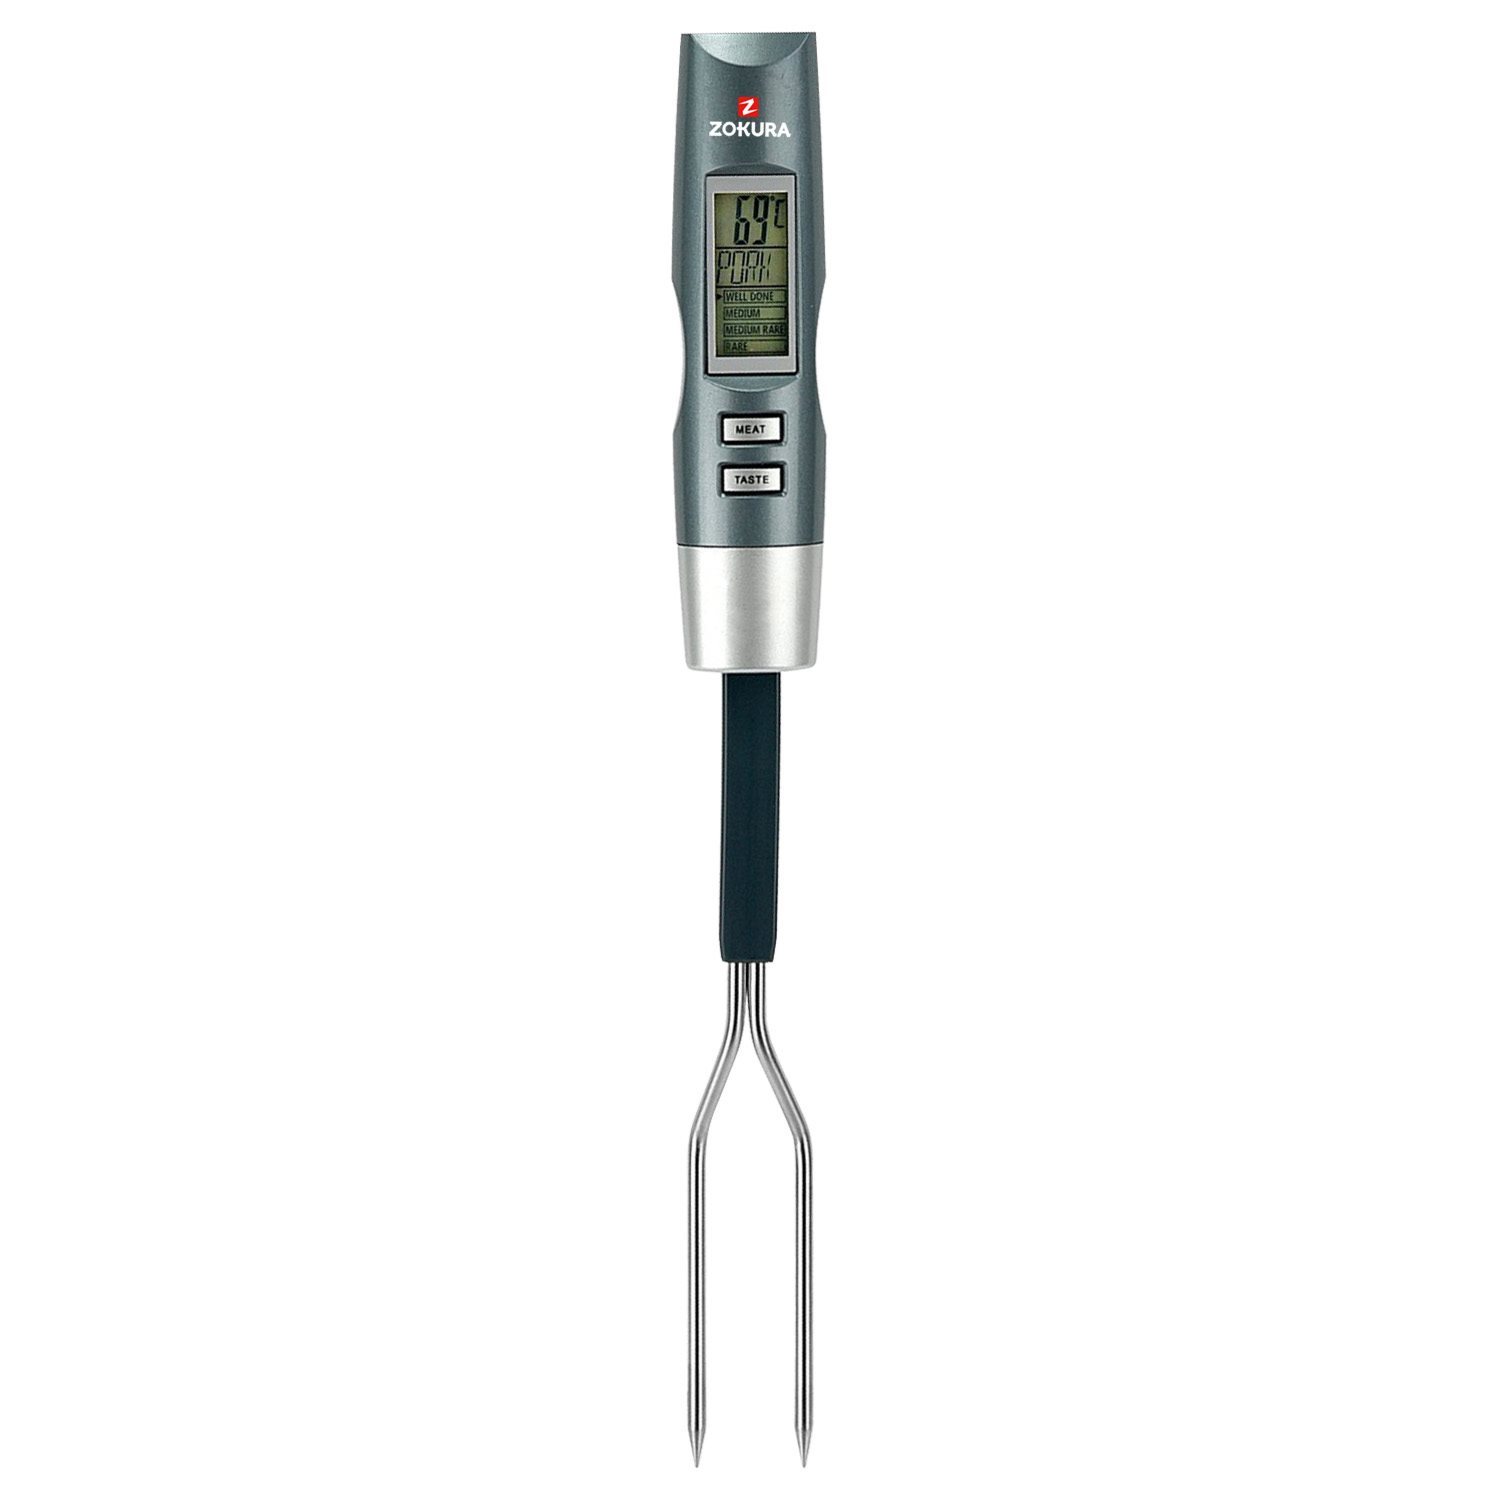 Termometru digital pentru carne - Zokura